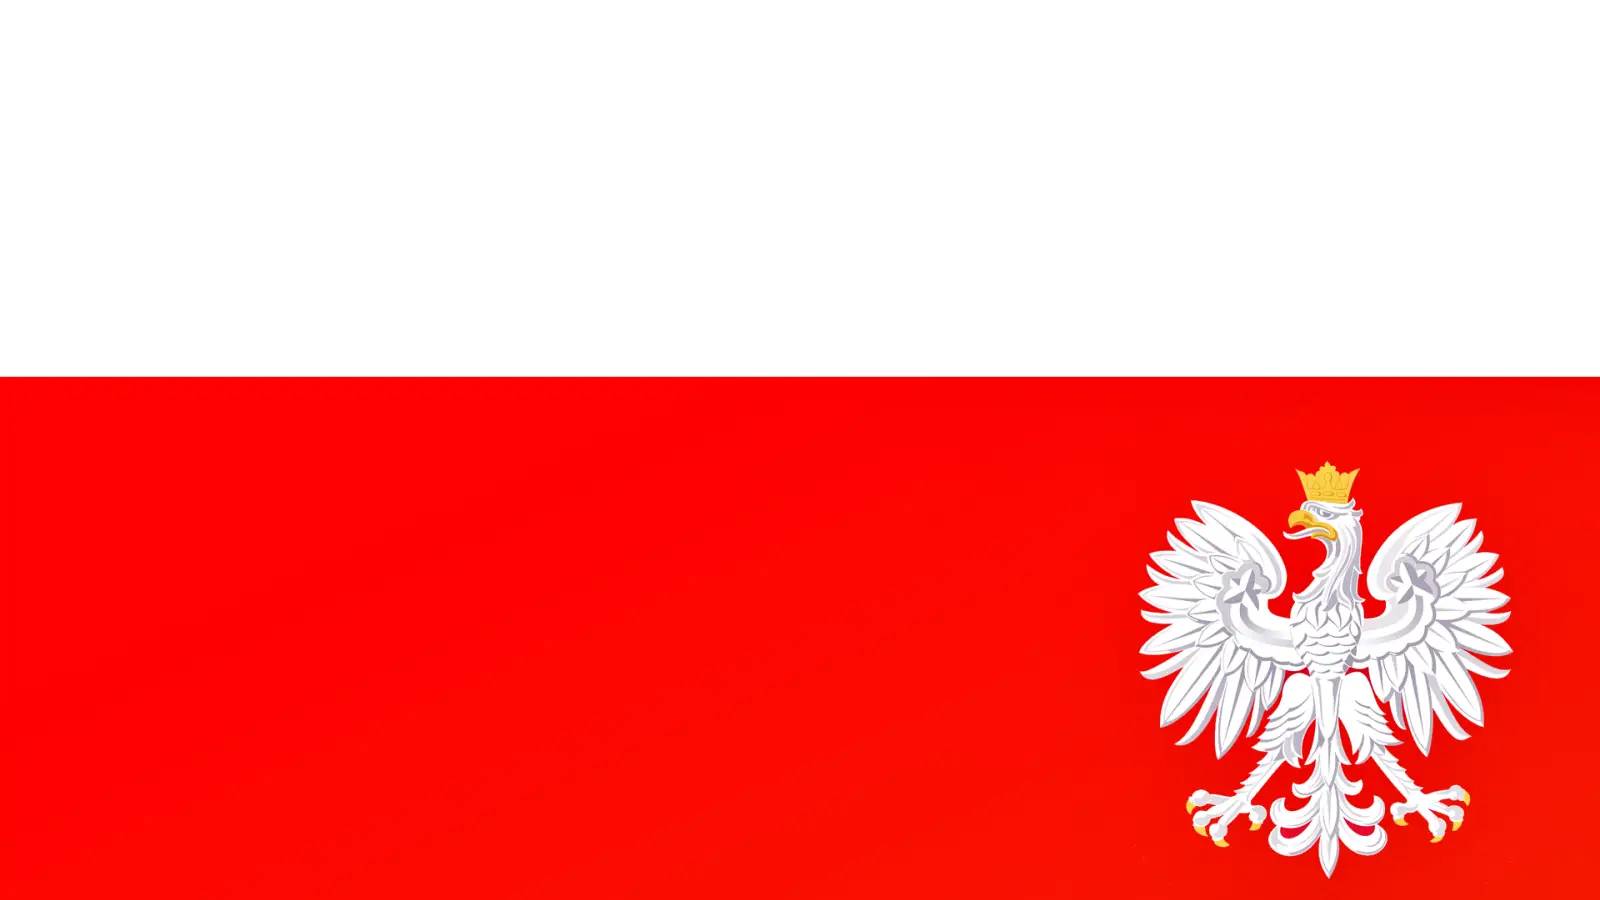 Polonia Intentioneaza sa Trimita Zeci de Tancuri Proprii in Ucraina